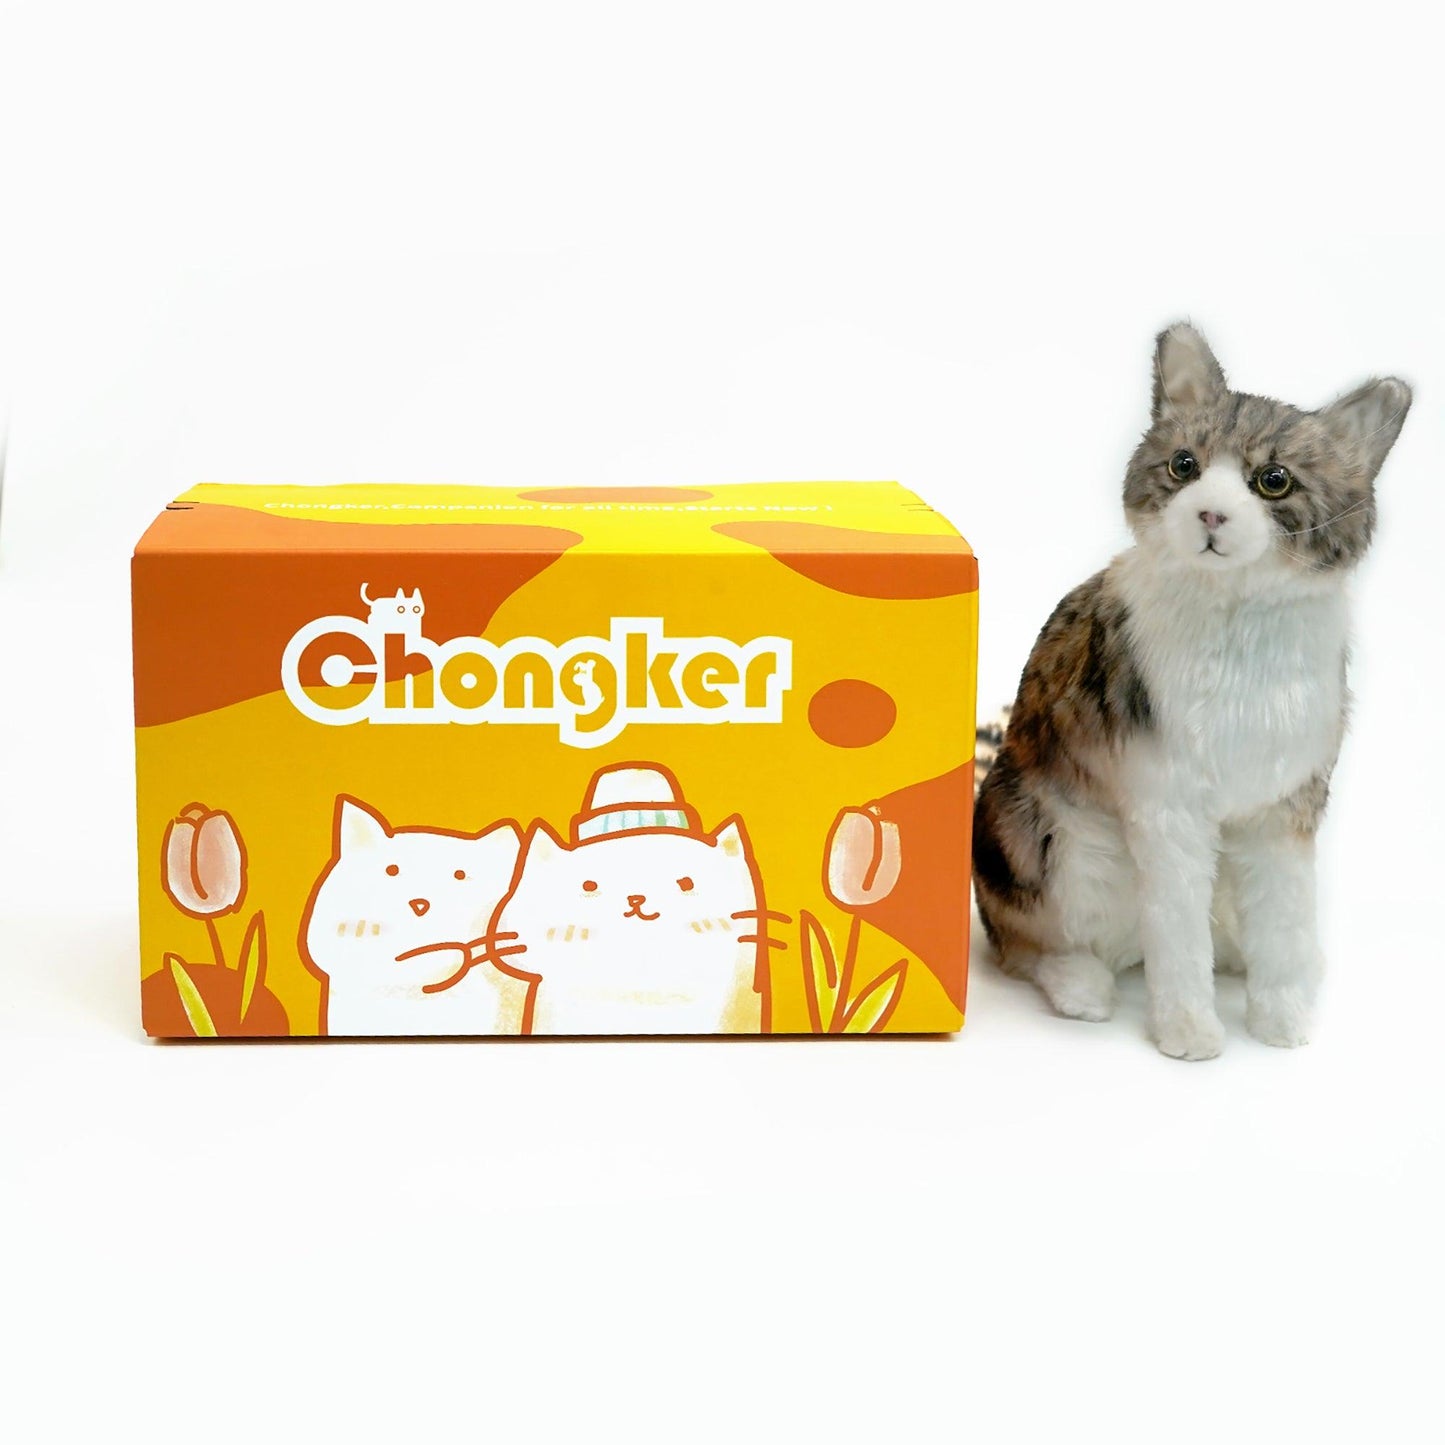 No. 6 Standing Small Kitten - Chongker